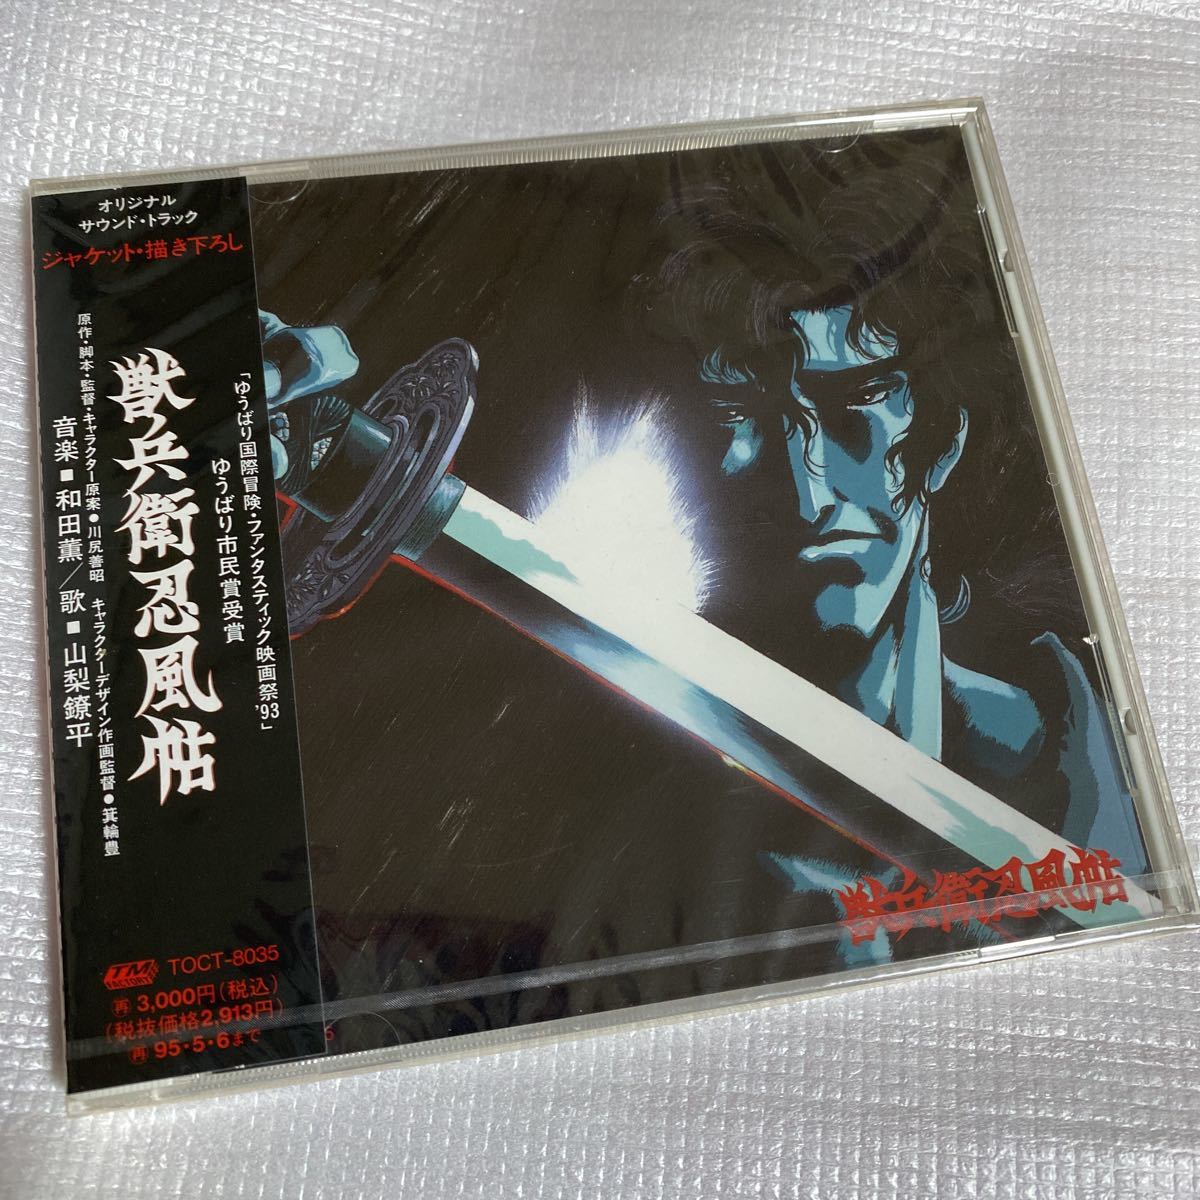 激レア 見本盤 CD 獣兵衛忍風帖 オリジナル サウンドトラック 和田薫 